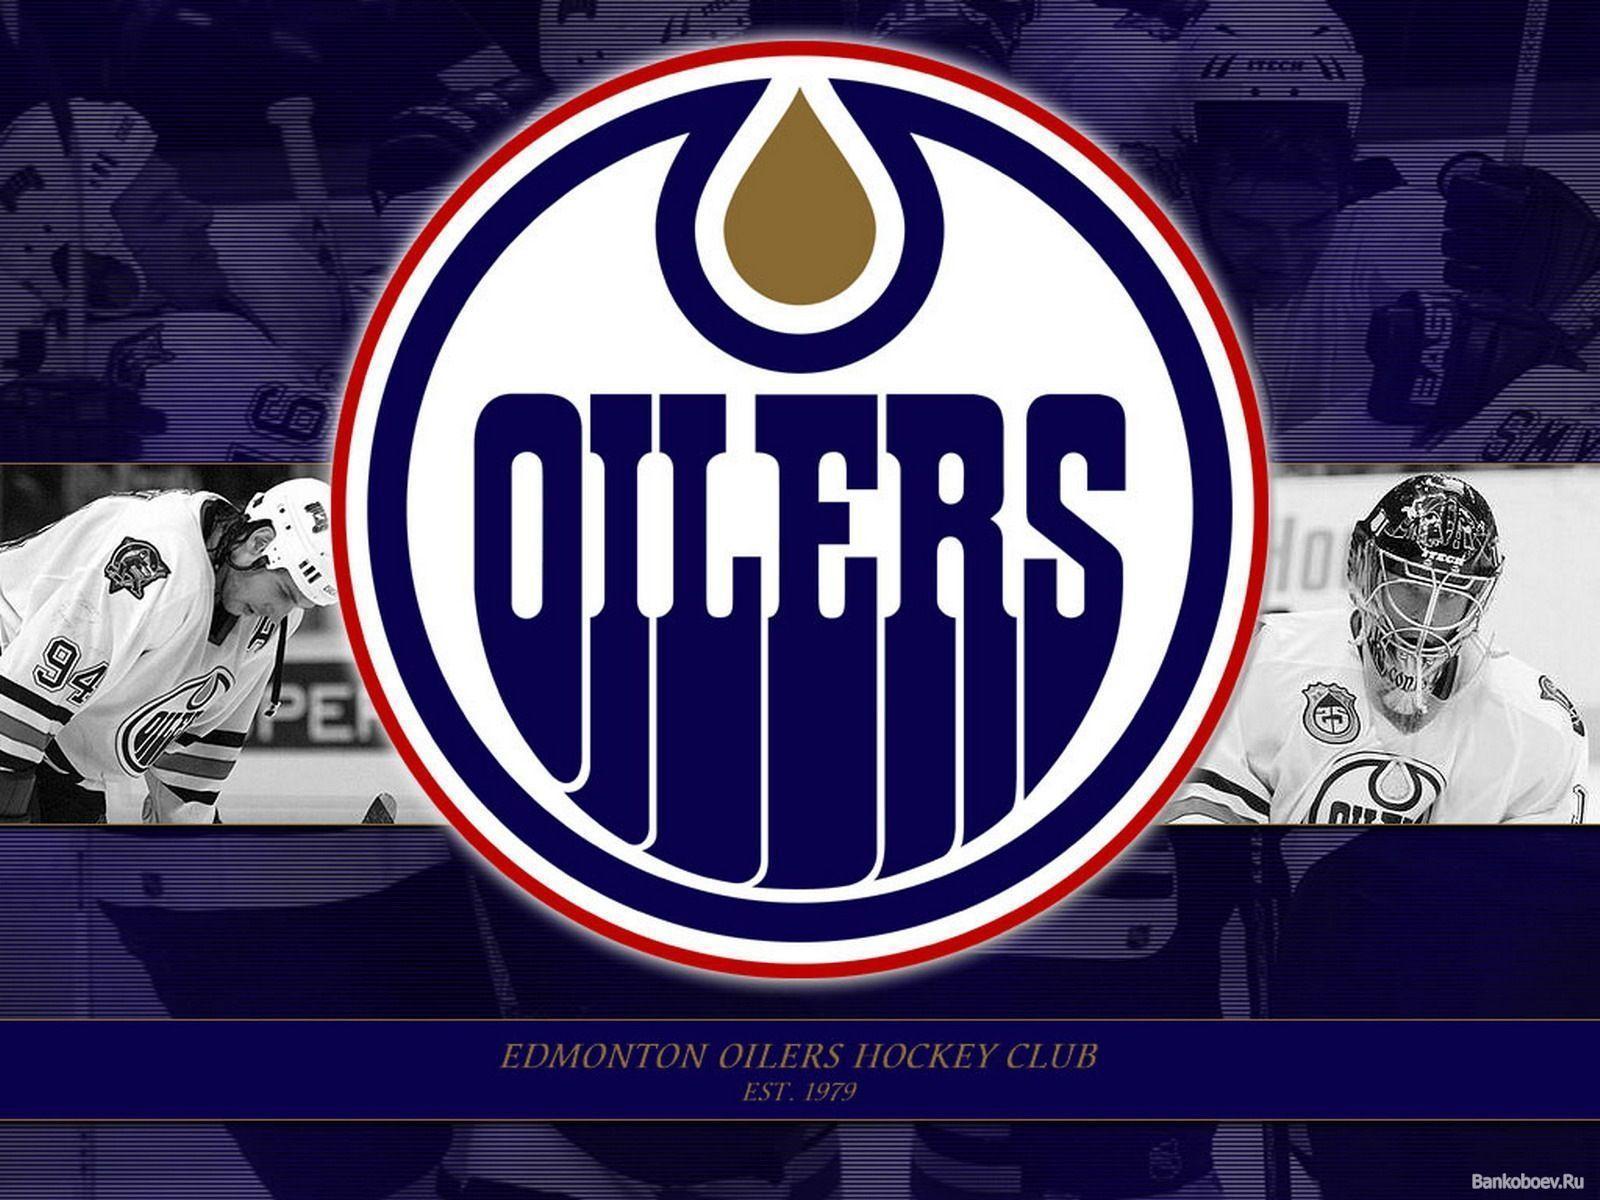 New Edmonton Oilers background. Edmonton Oilers wallpaper